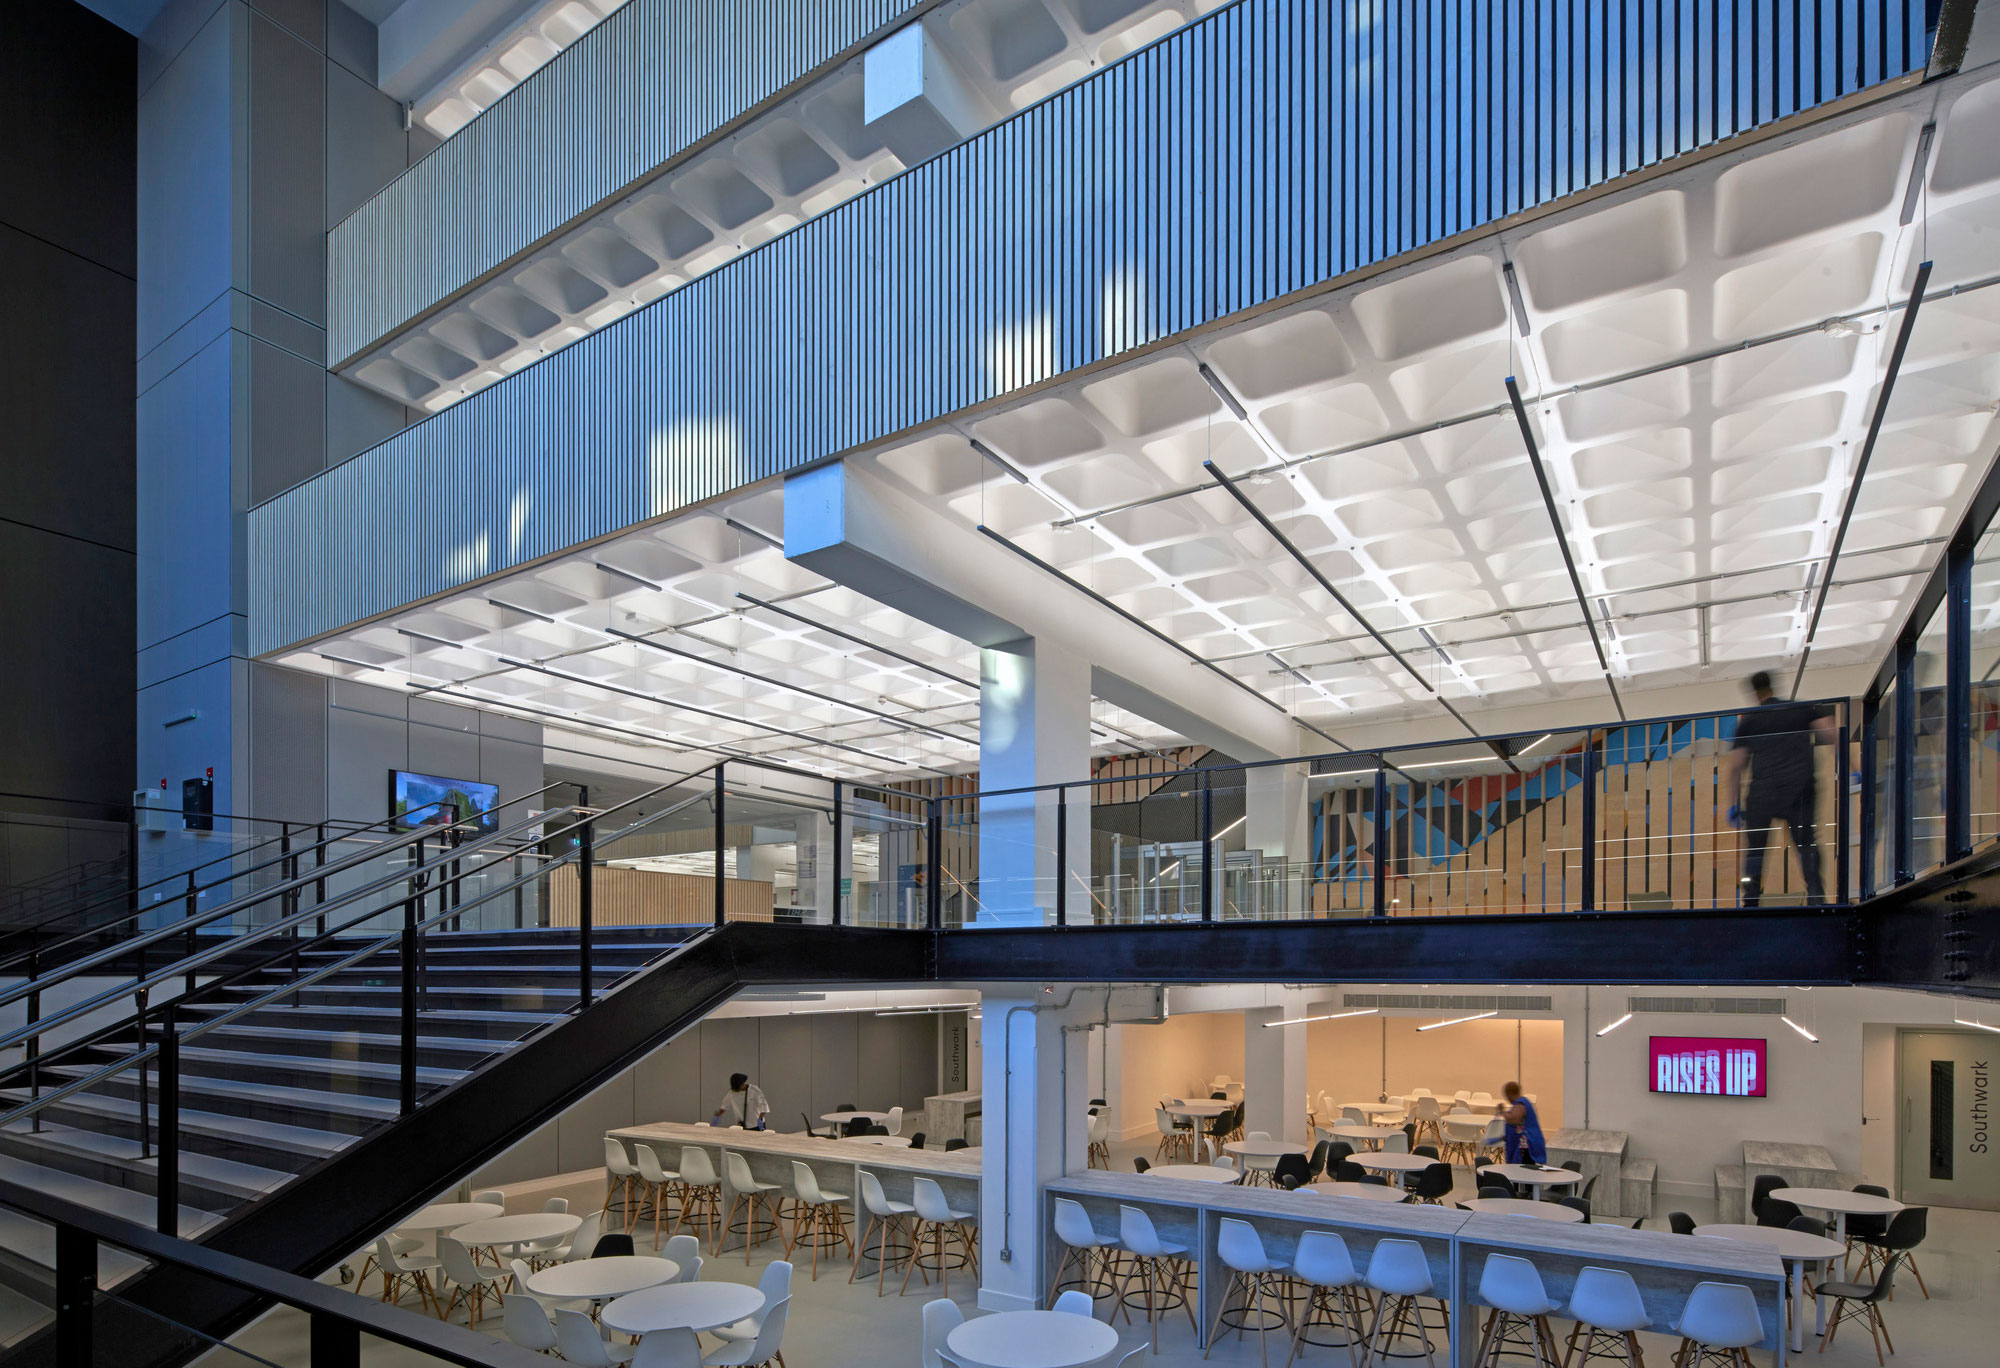 Low-Carbon Retrofit provides transformational building for London South Bank University